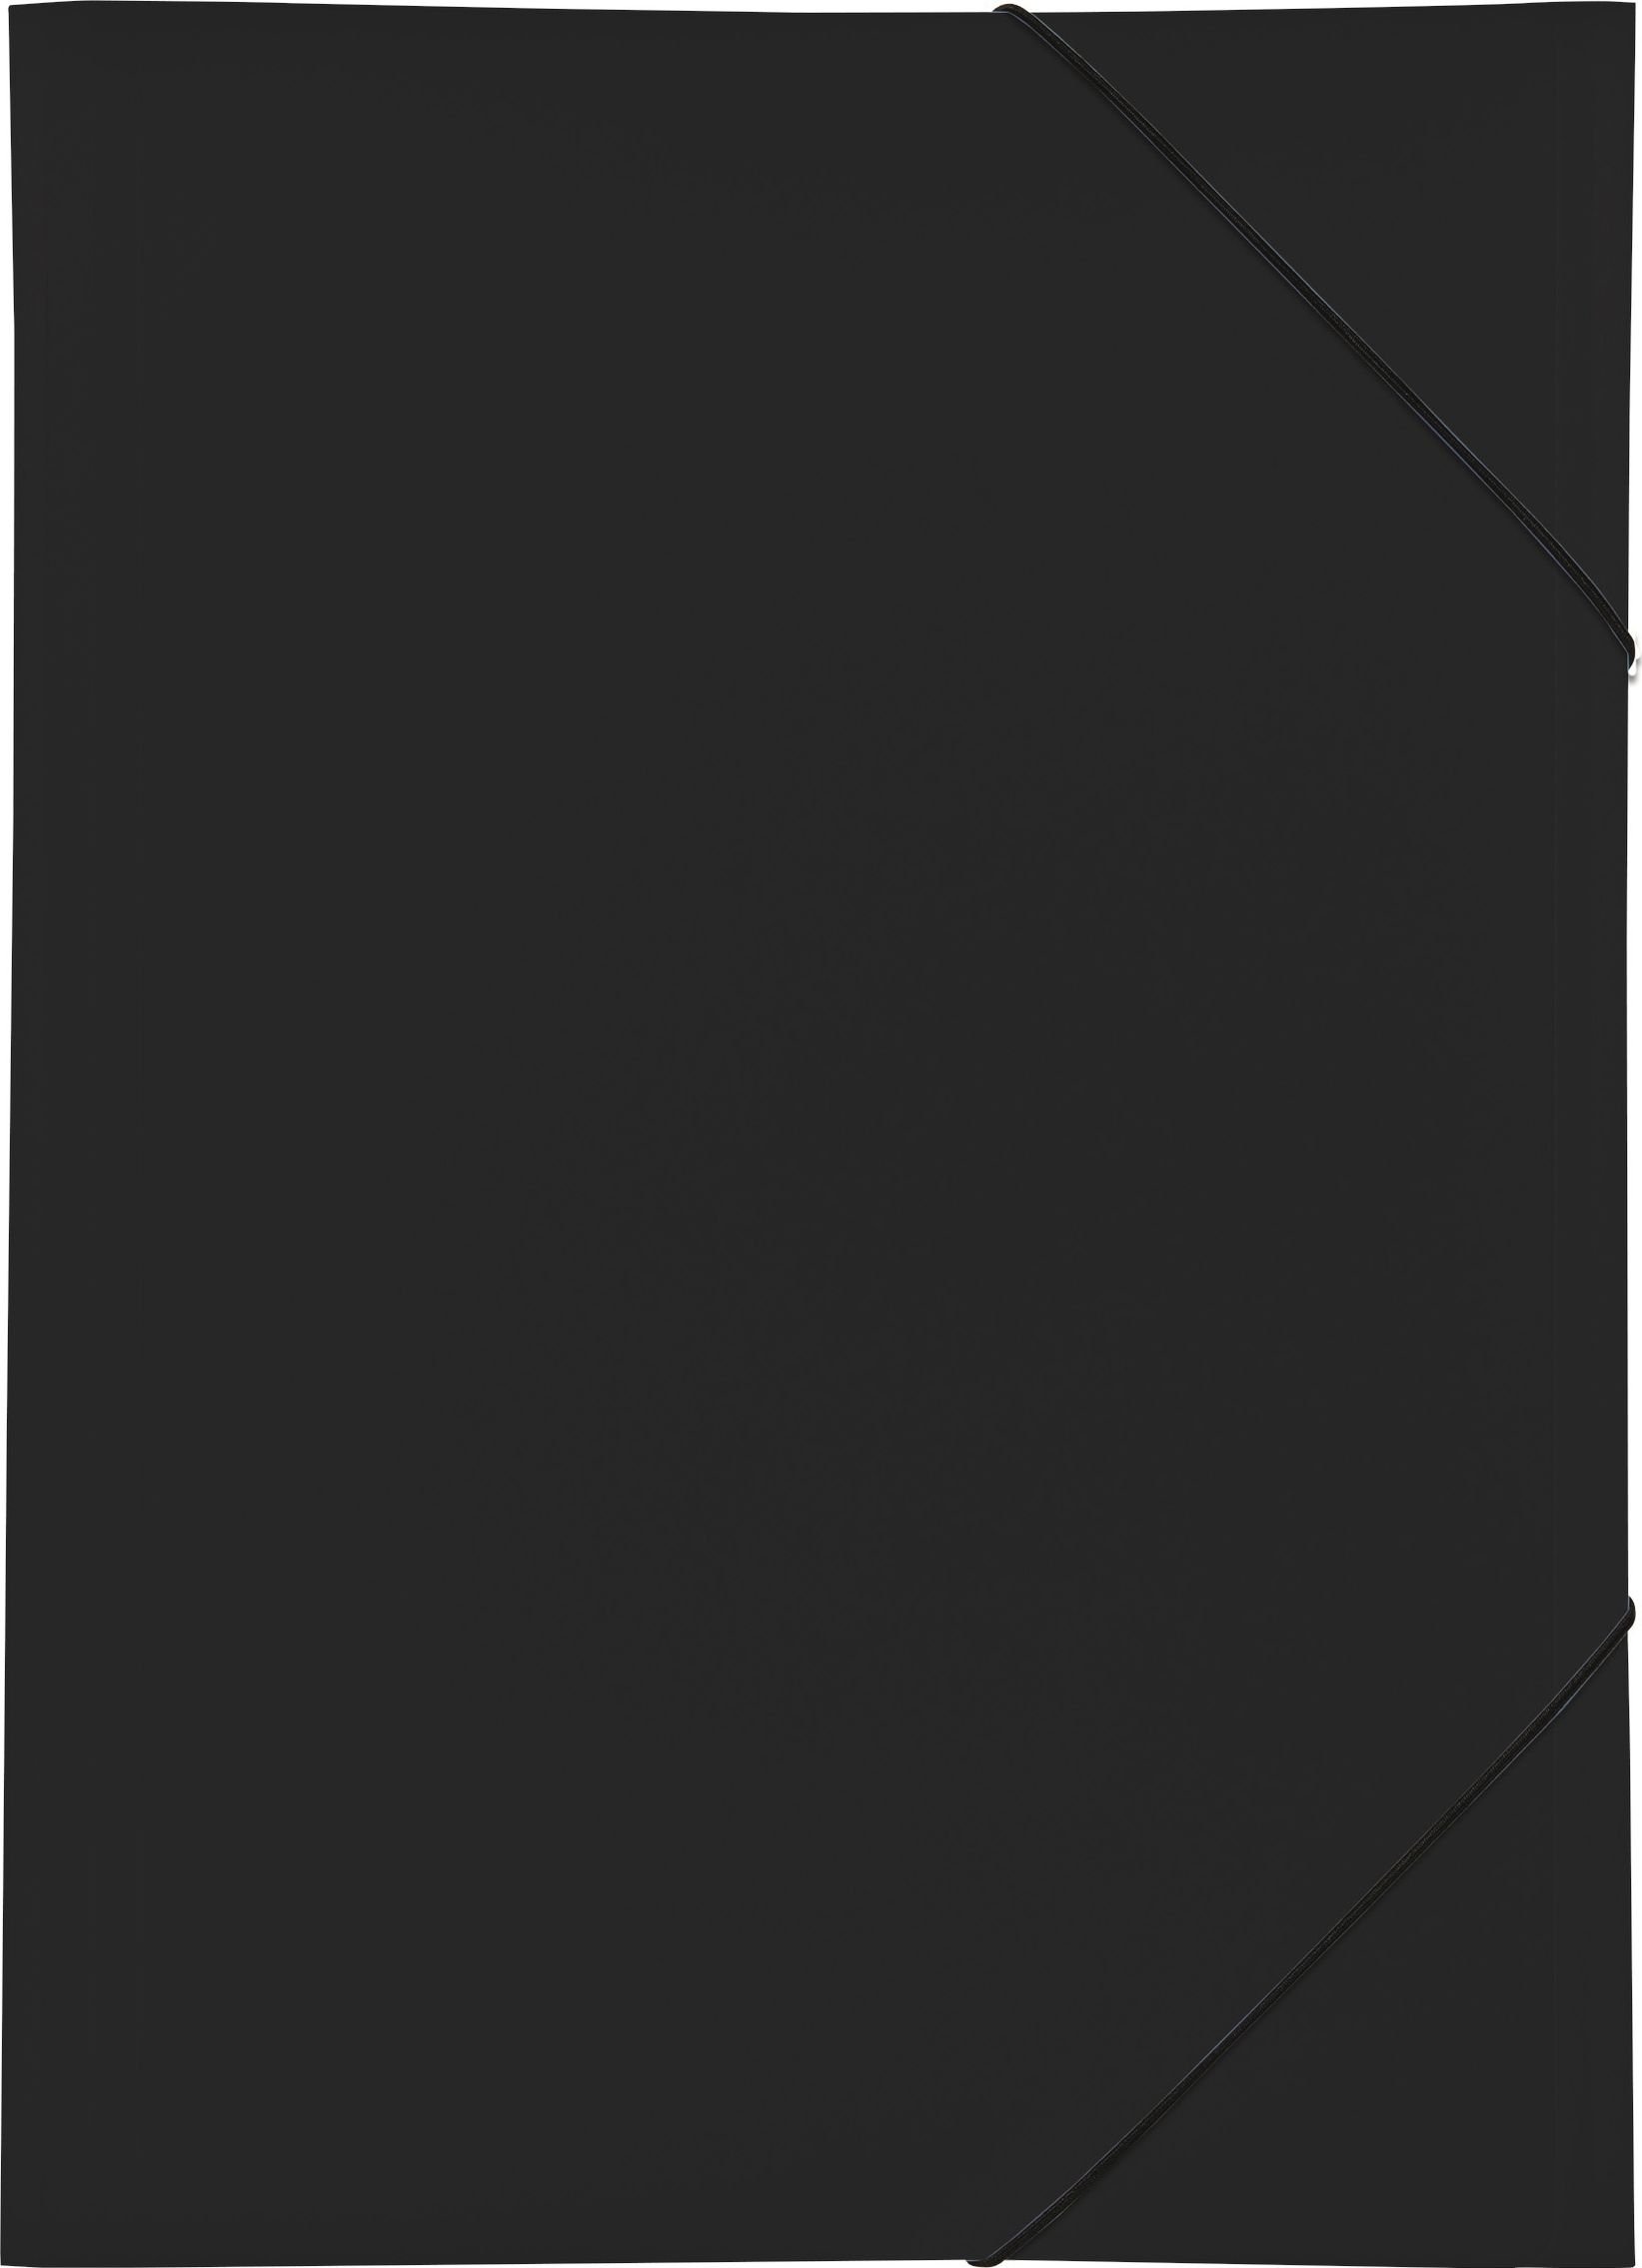 Portofoliu PP A3 3 Einschlagklappen schwarz